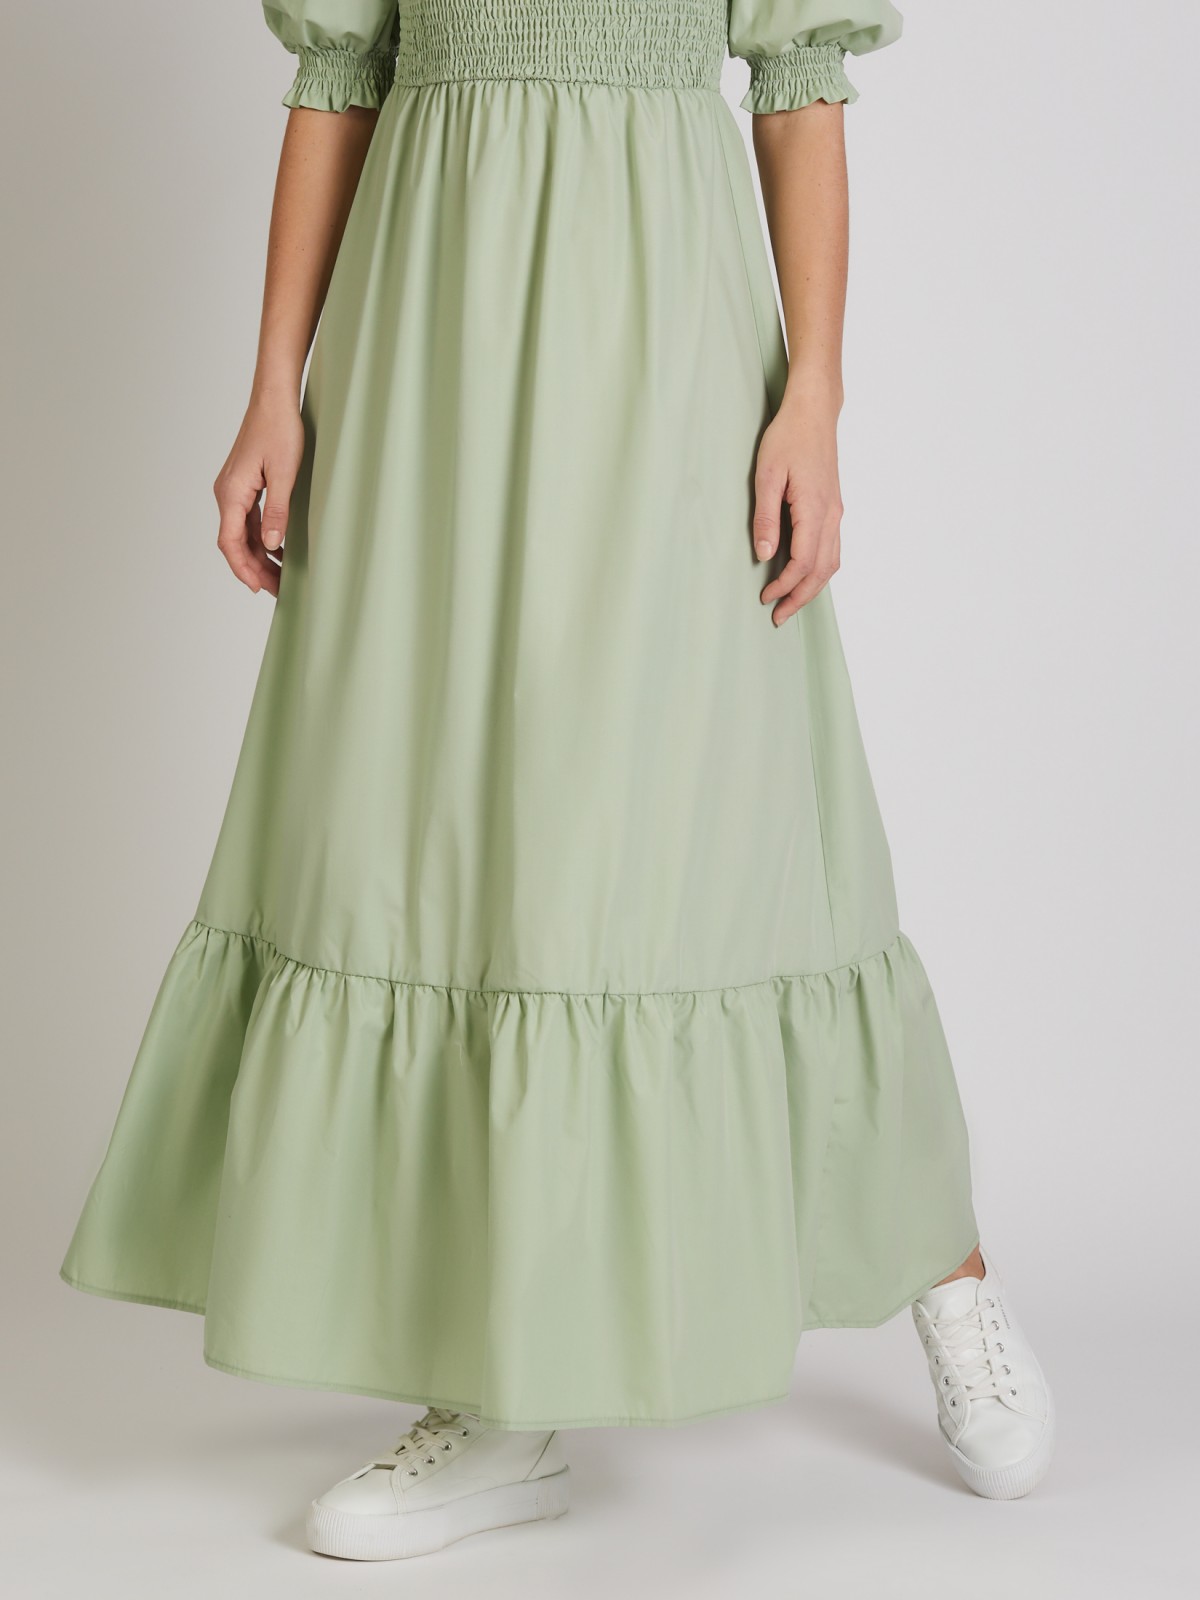 Платье zolla 022248262333, цвет светло-зеленый, размер XS - фото 5